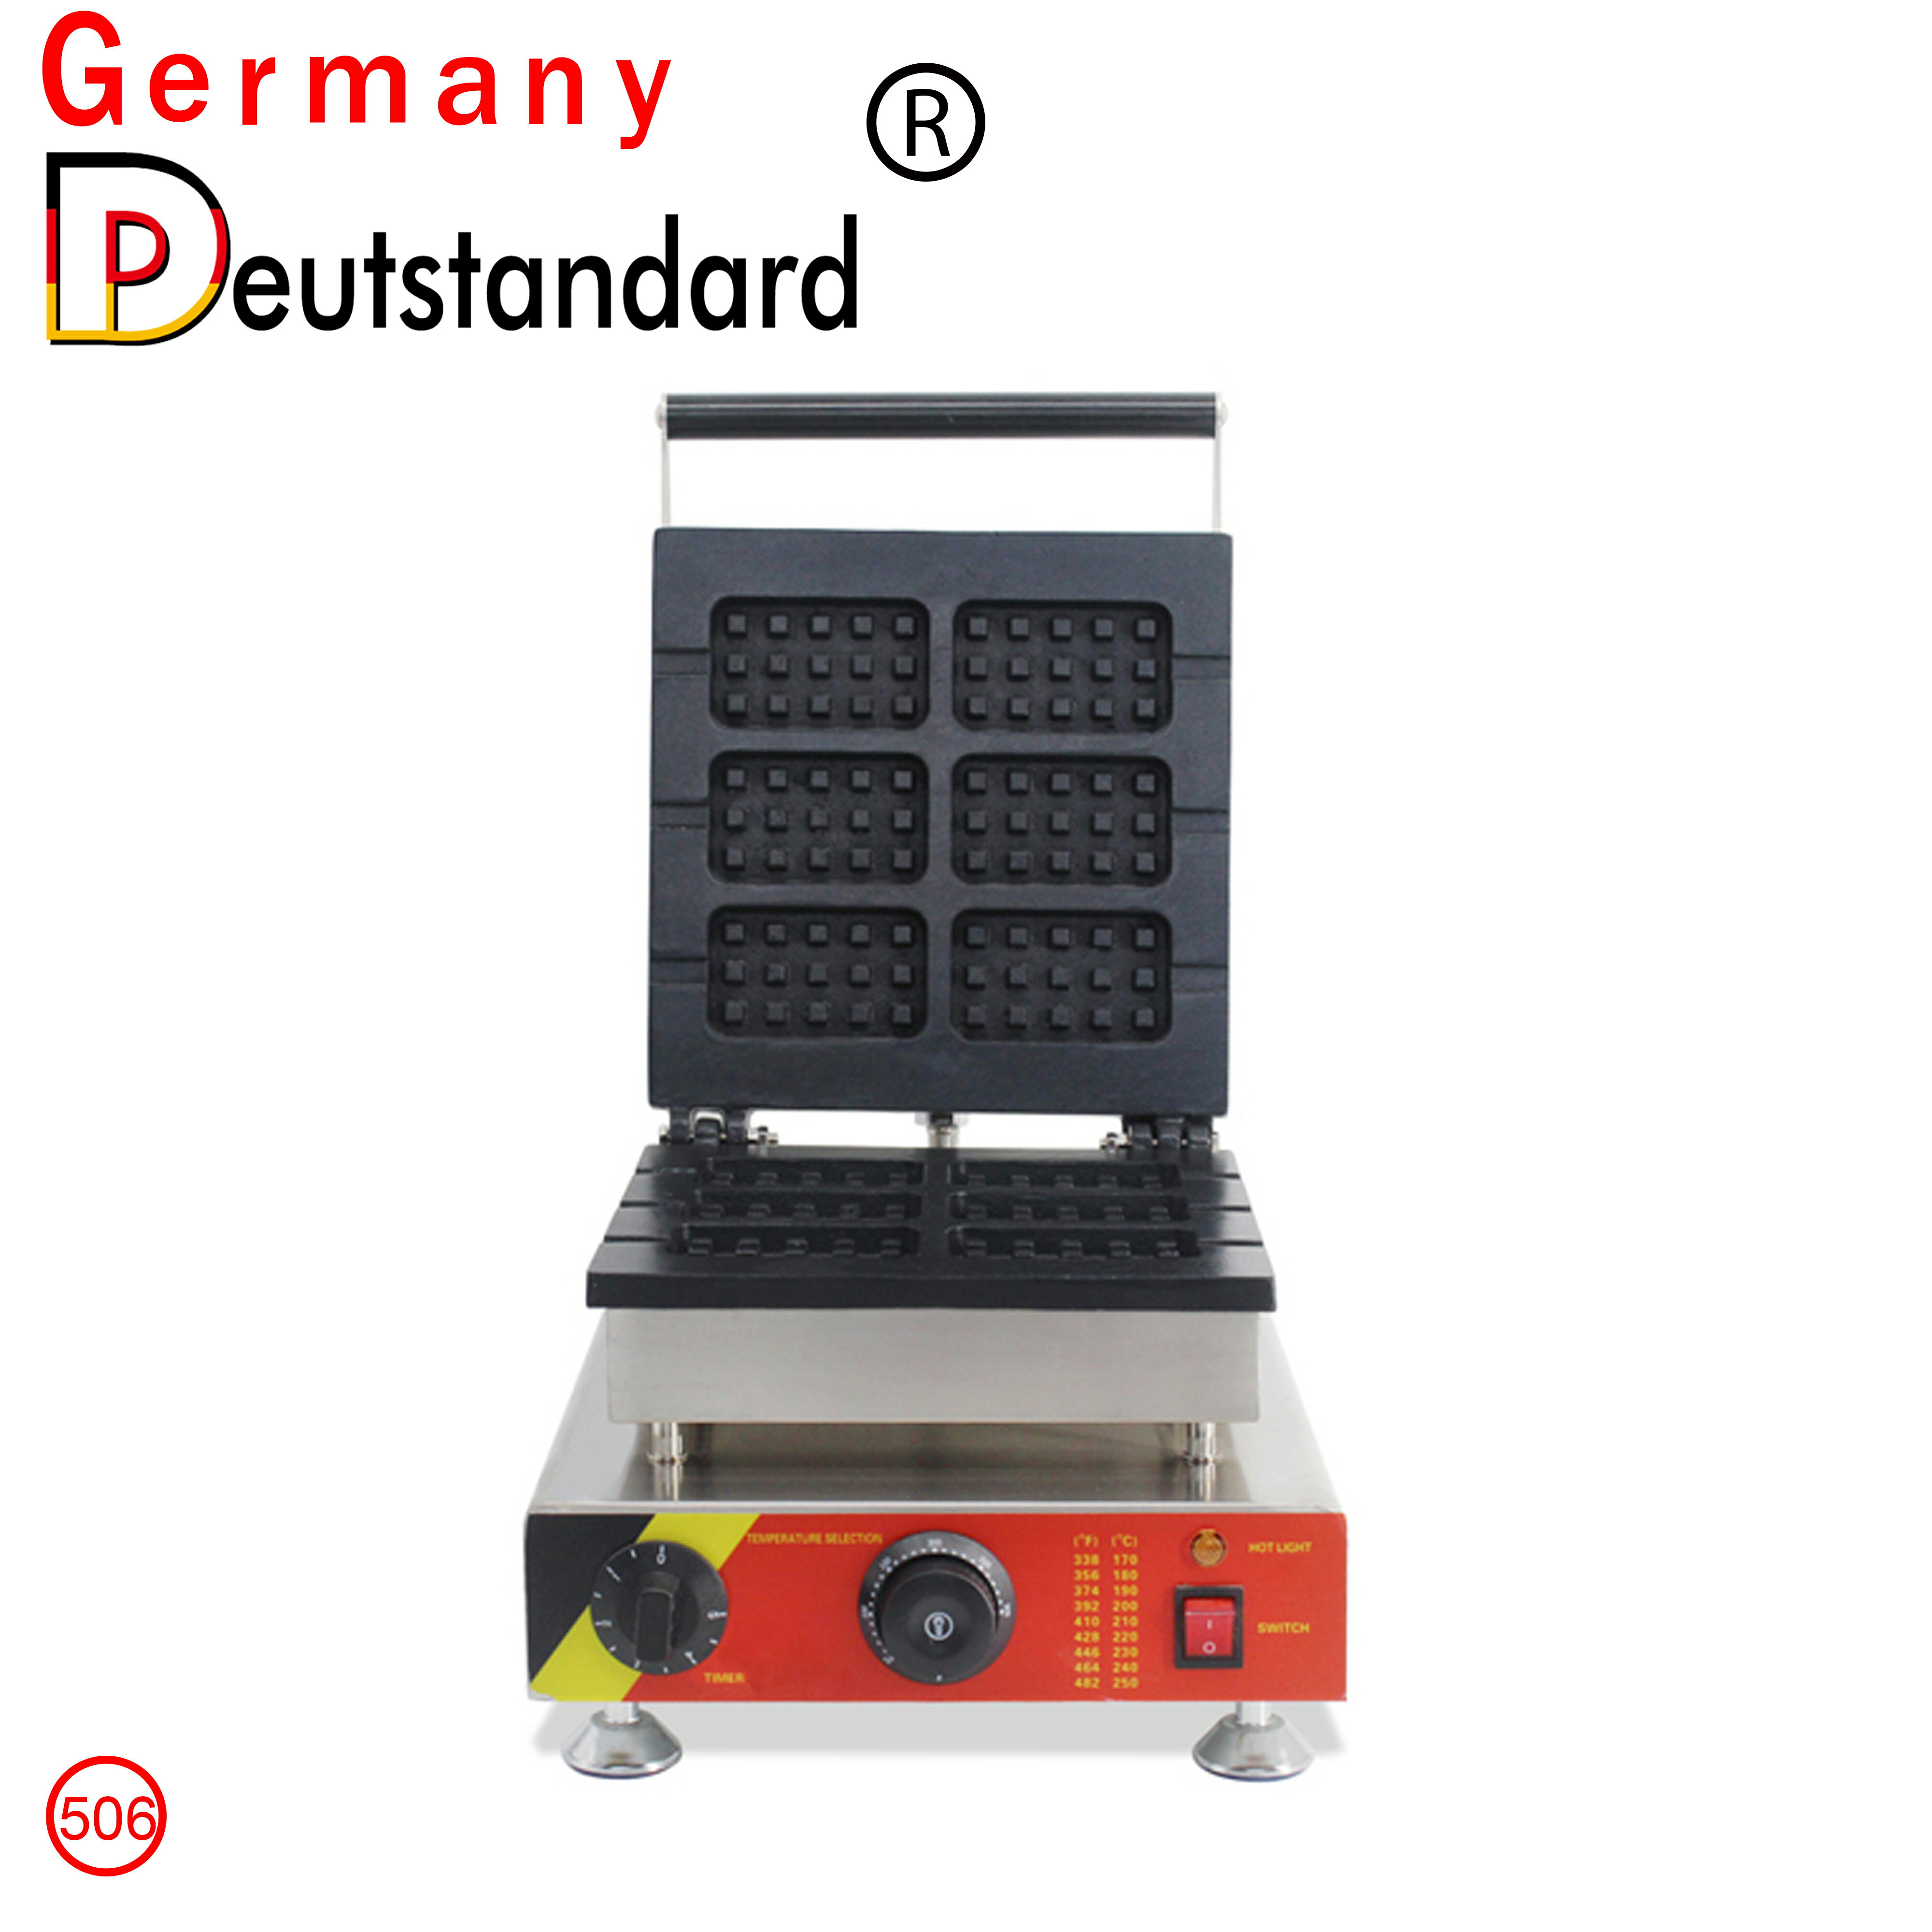 德國品牌六片方形華夫餅松餅機商用電餅鐺三明治吐司蛋糕機NP-506